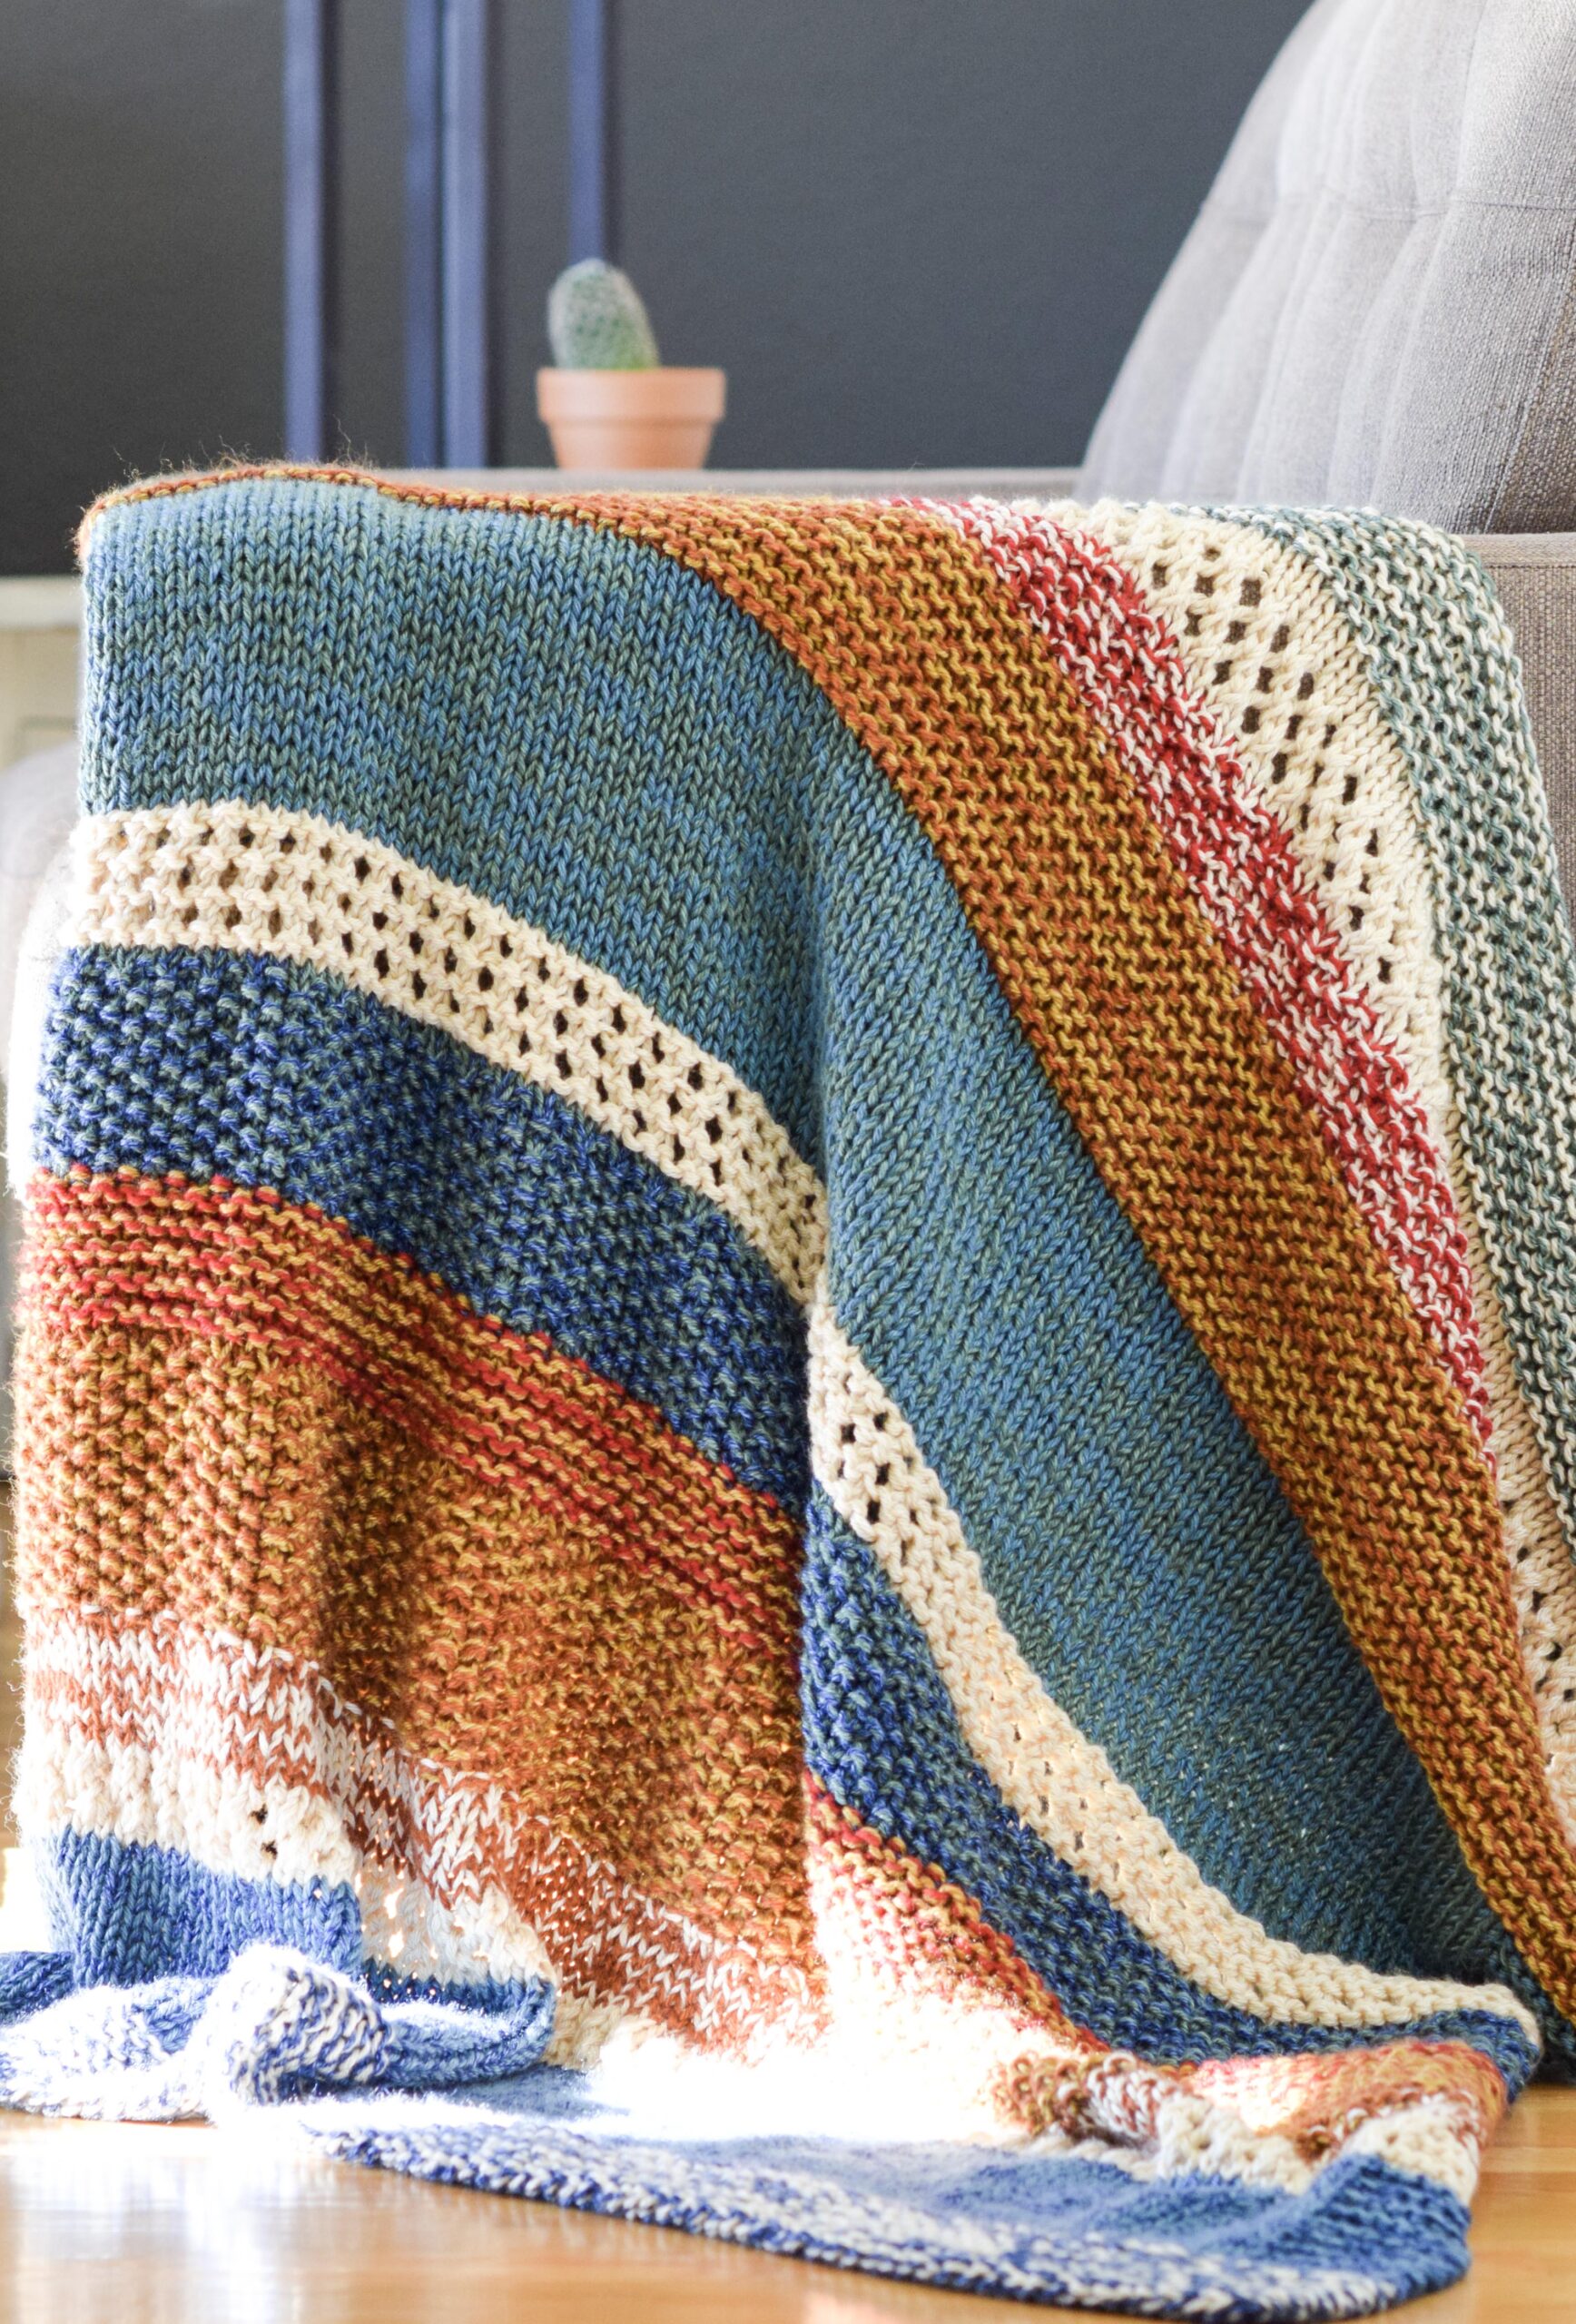 Easy striped crochet blanket - Scrap yarn blanket 